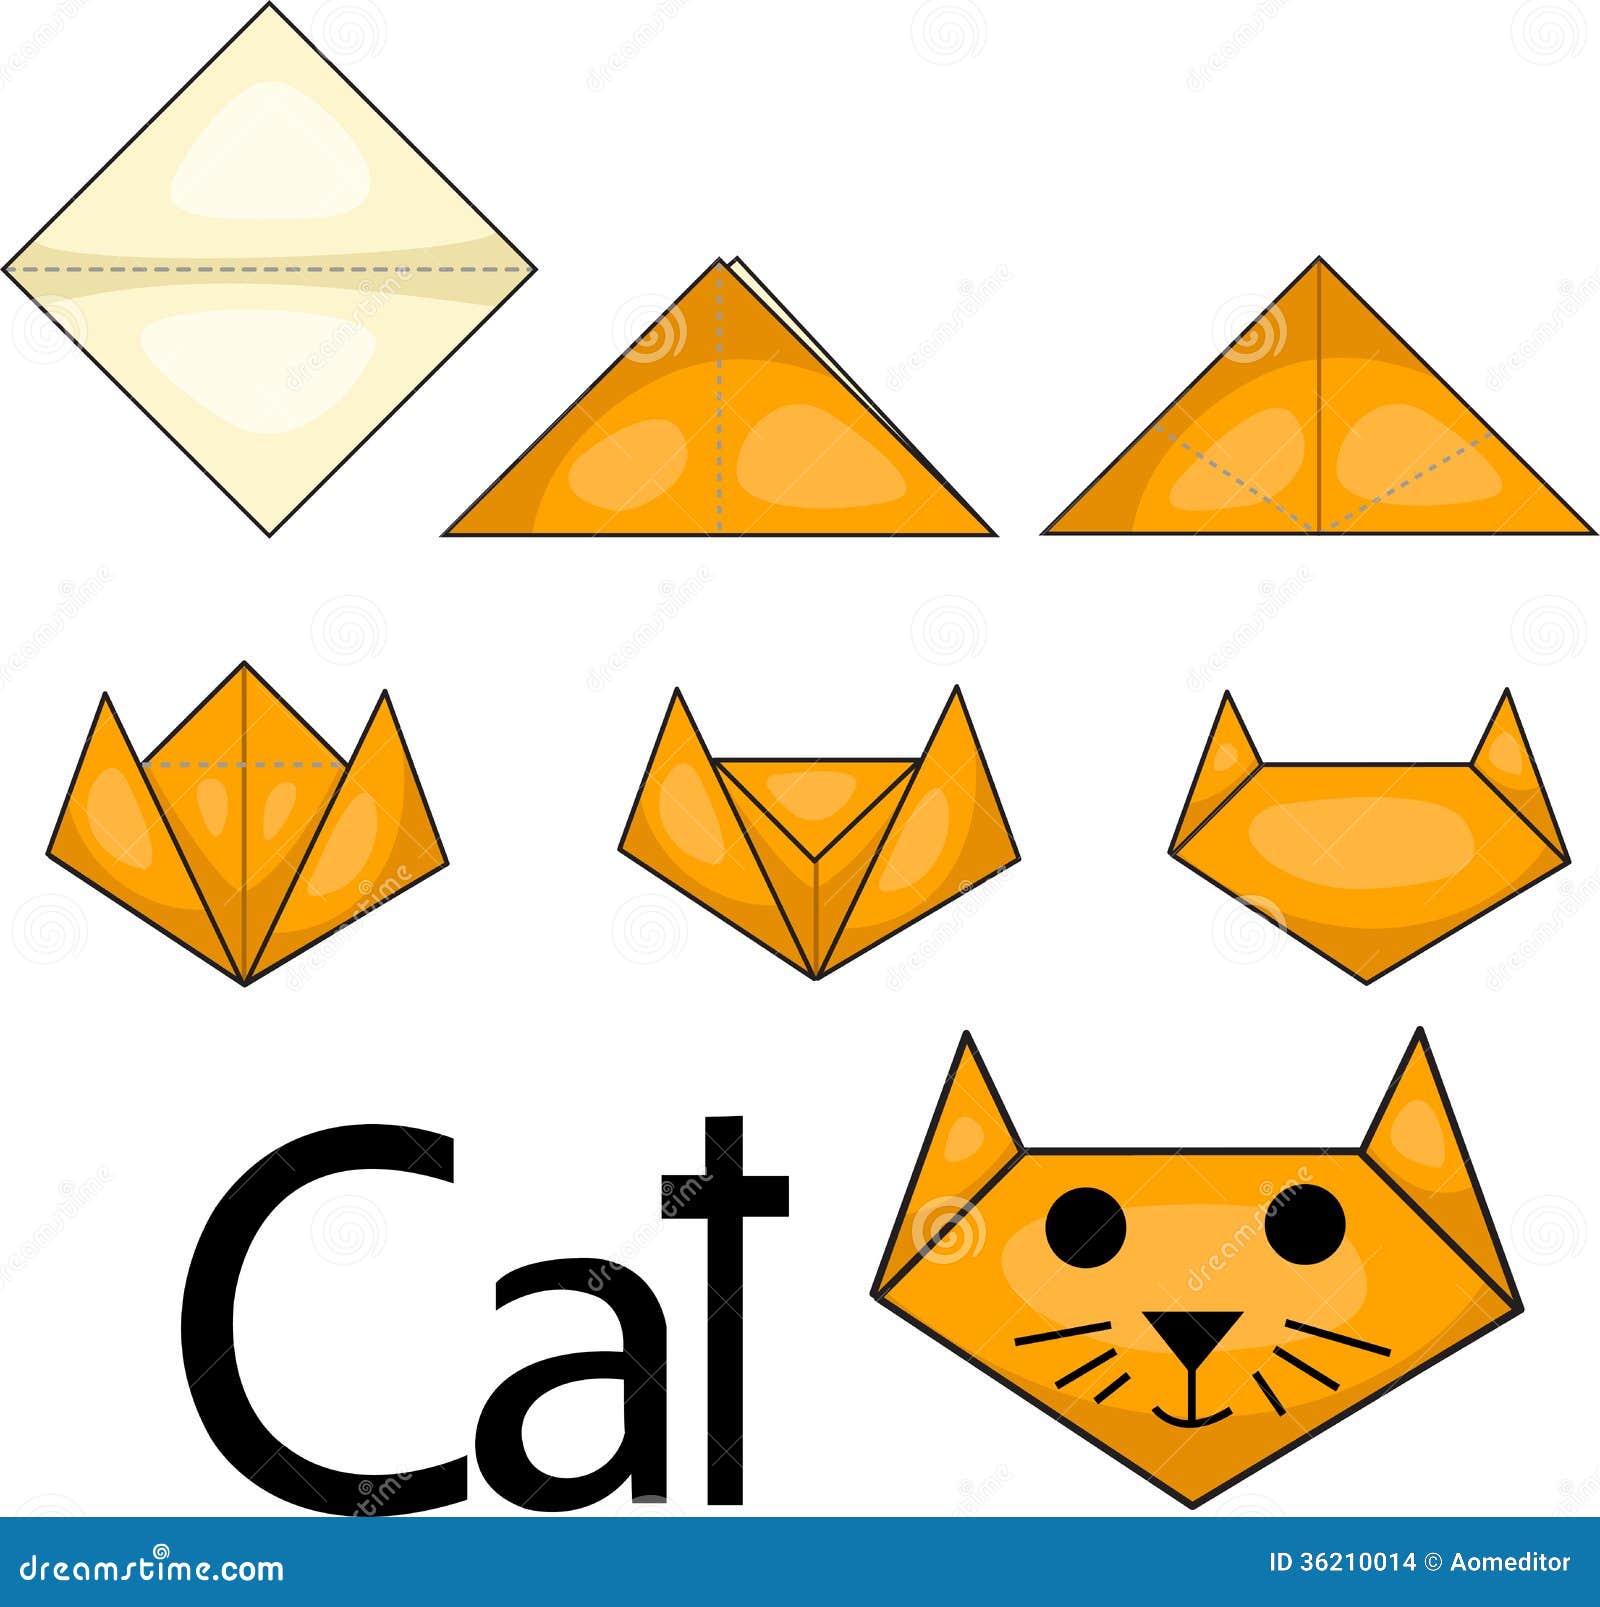 illustrator of cat origami